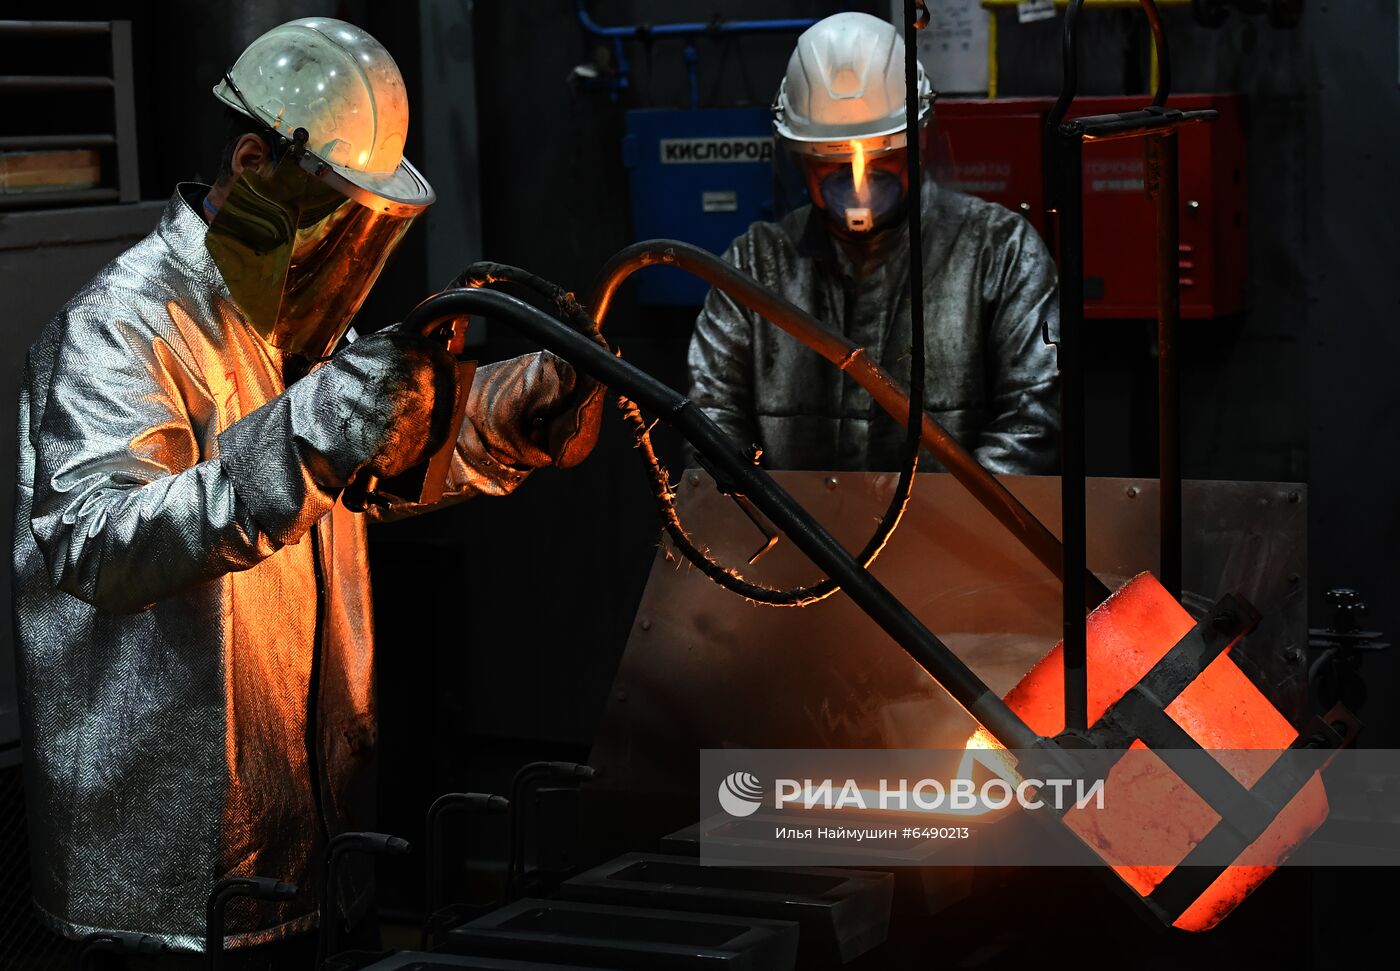 Производство золотых слитков на заводе "Красцветмет"